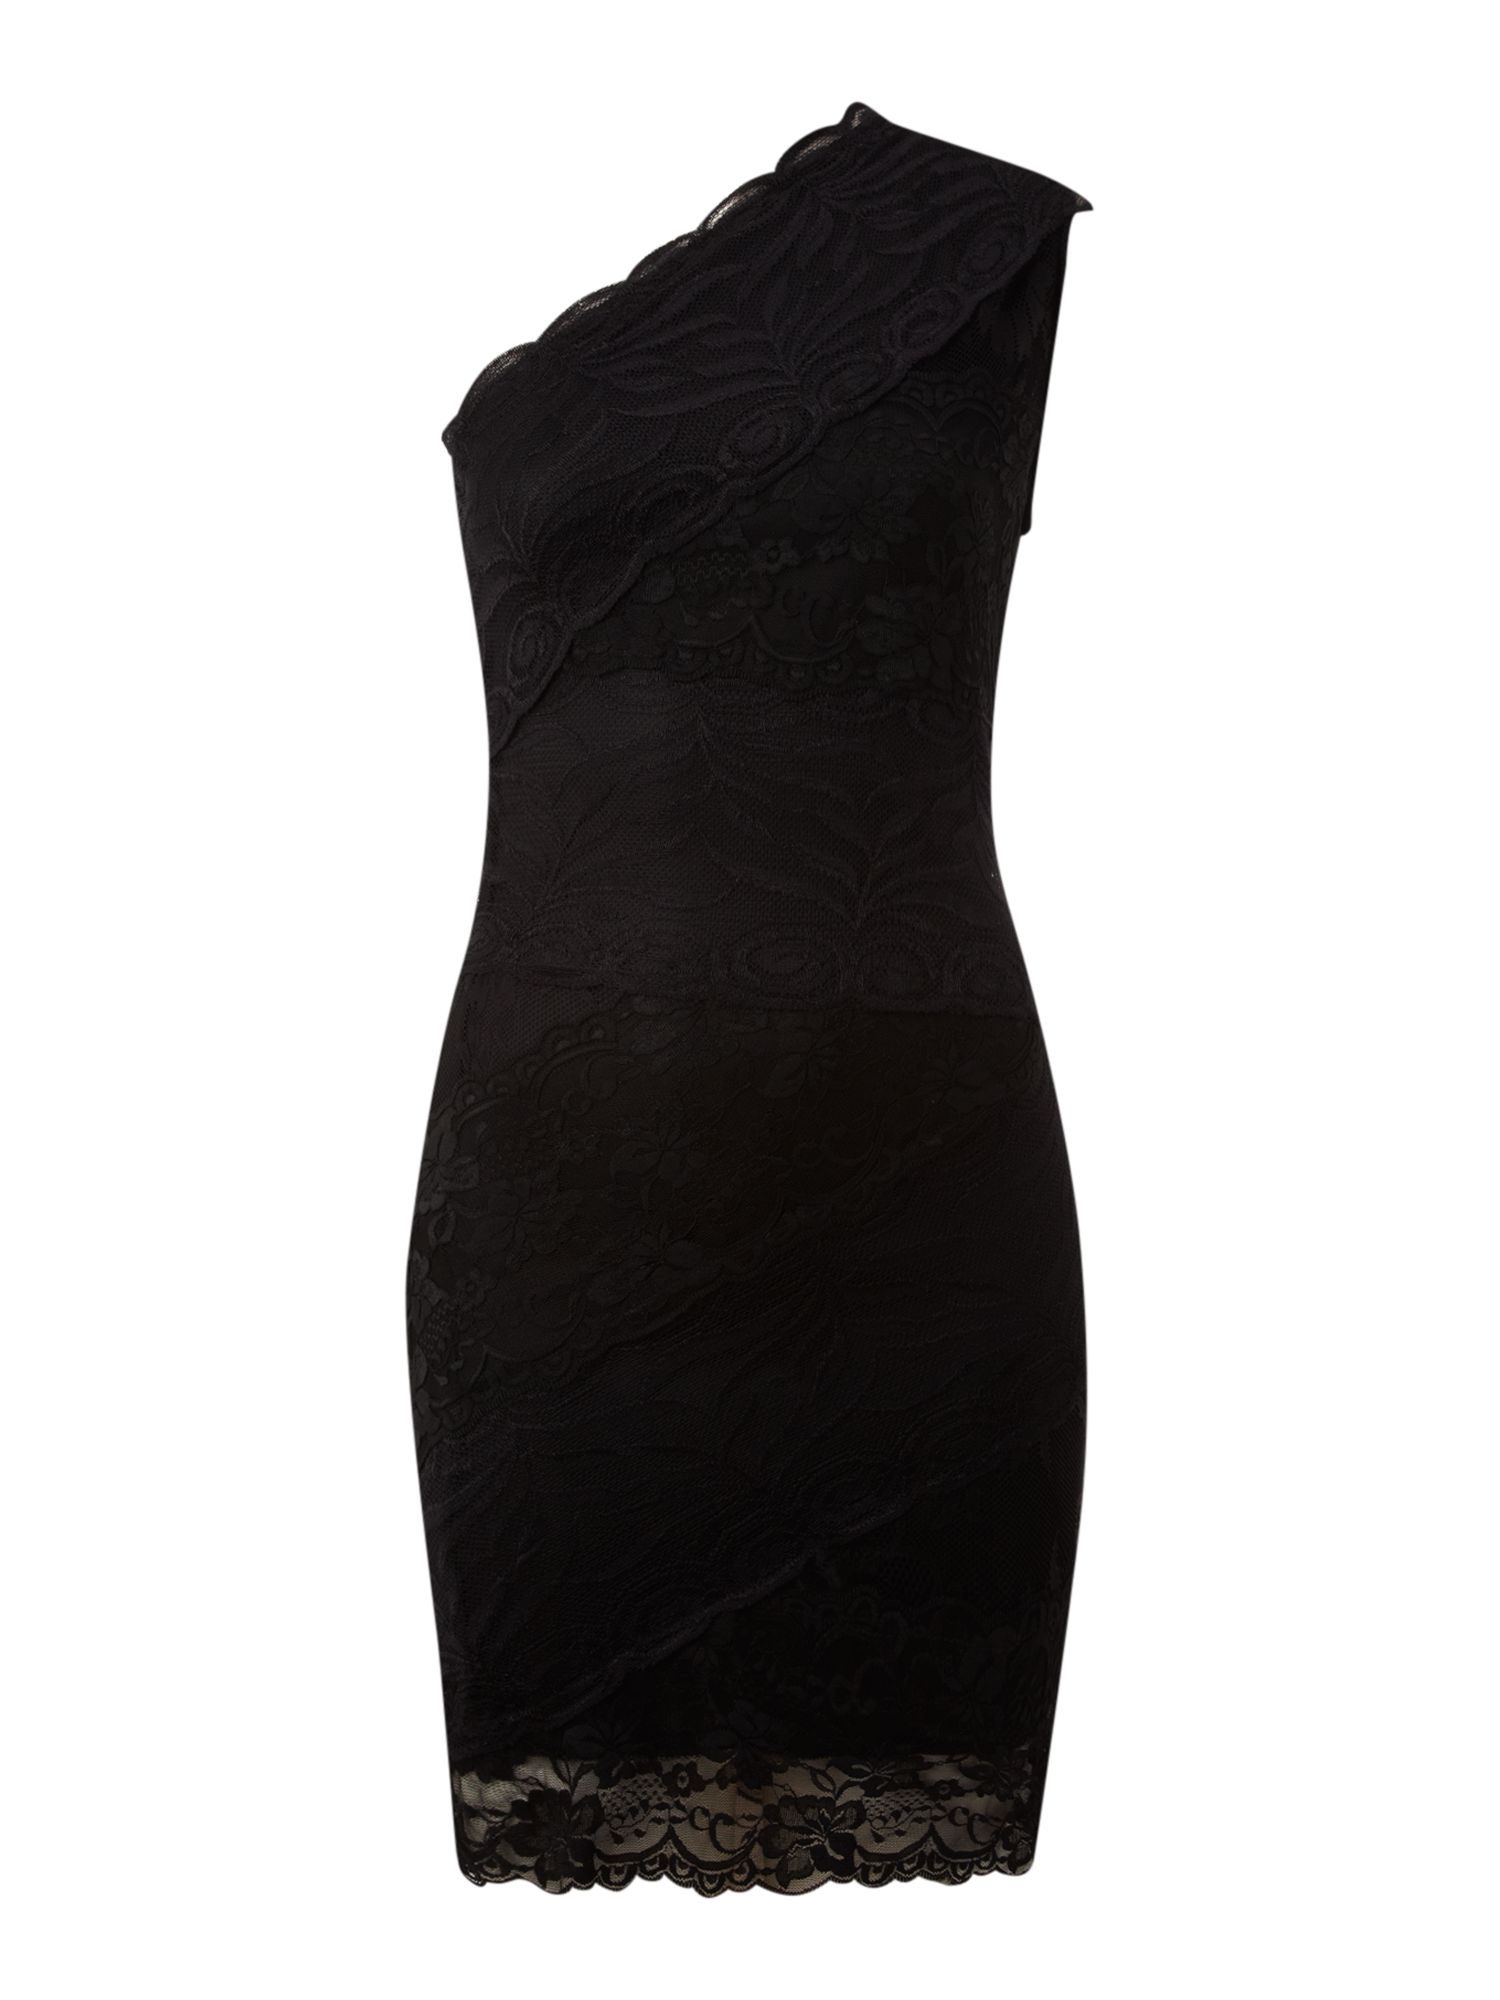 Ax Paris One Shoulder Lace Dress in Black | Lyst